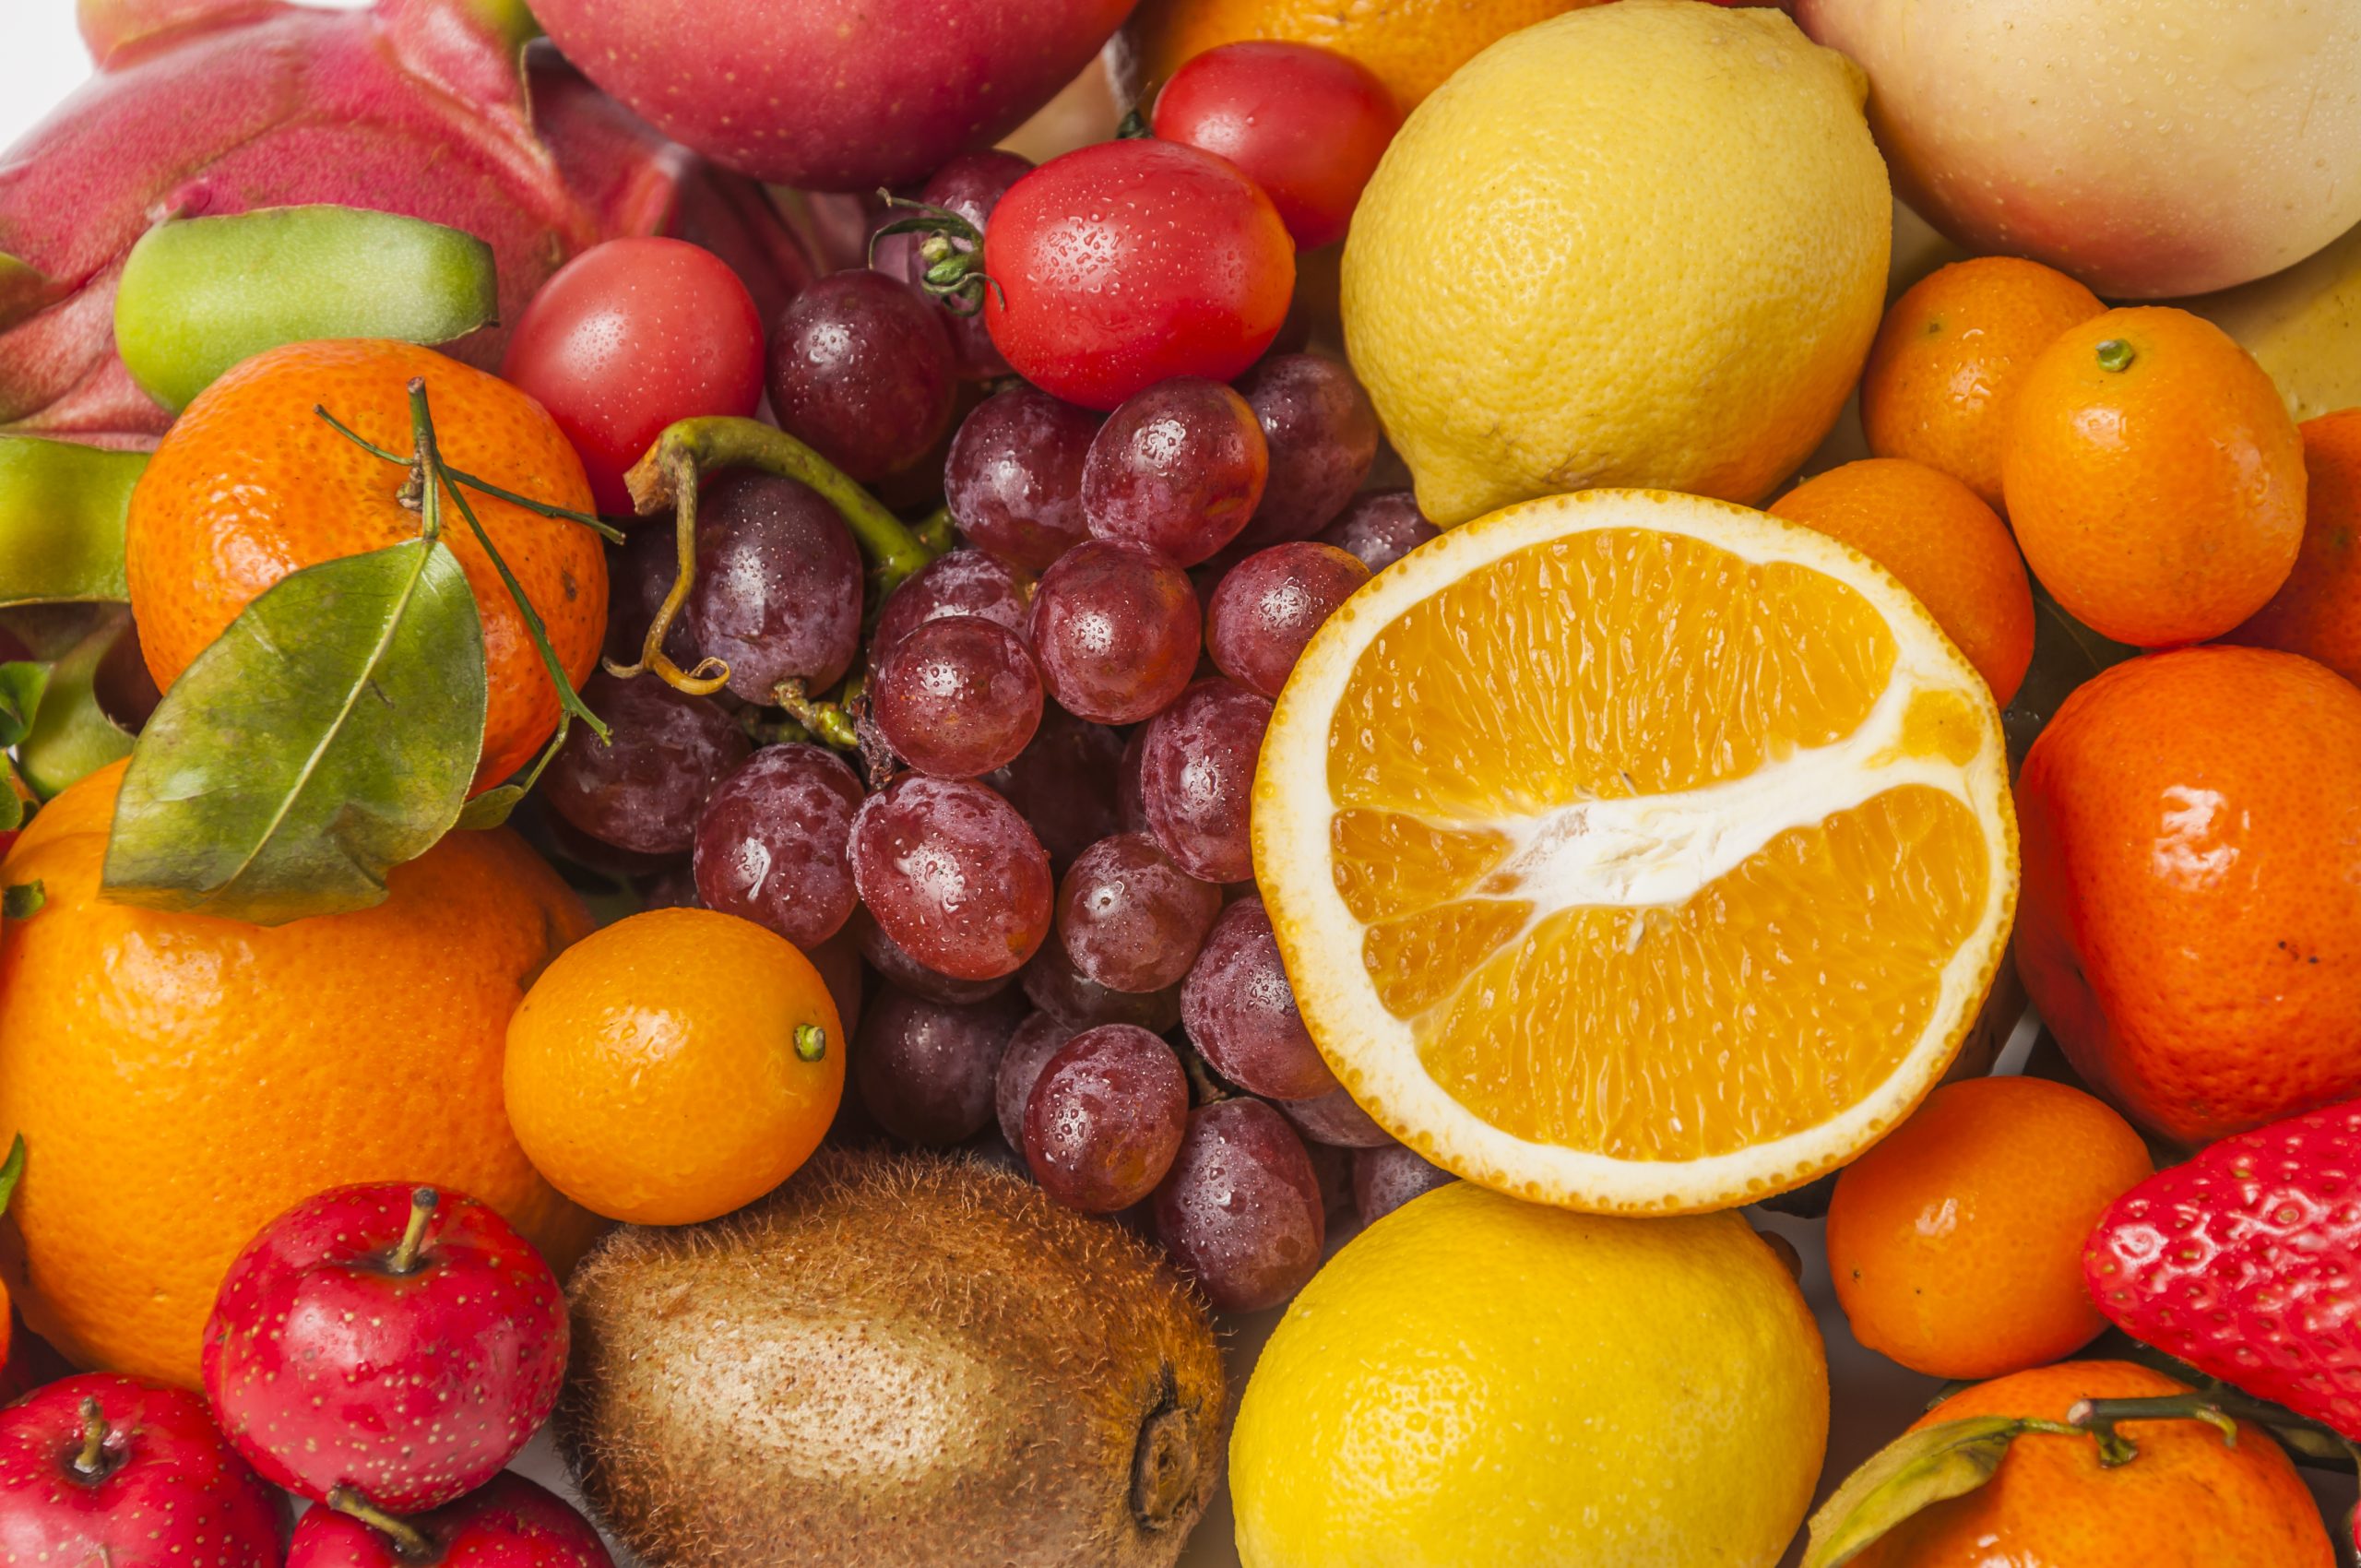 Berbagai Buah-buahan yang Berkhasiat Bagi Pengidap Penyakit Jantung